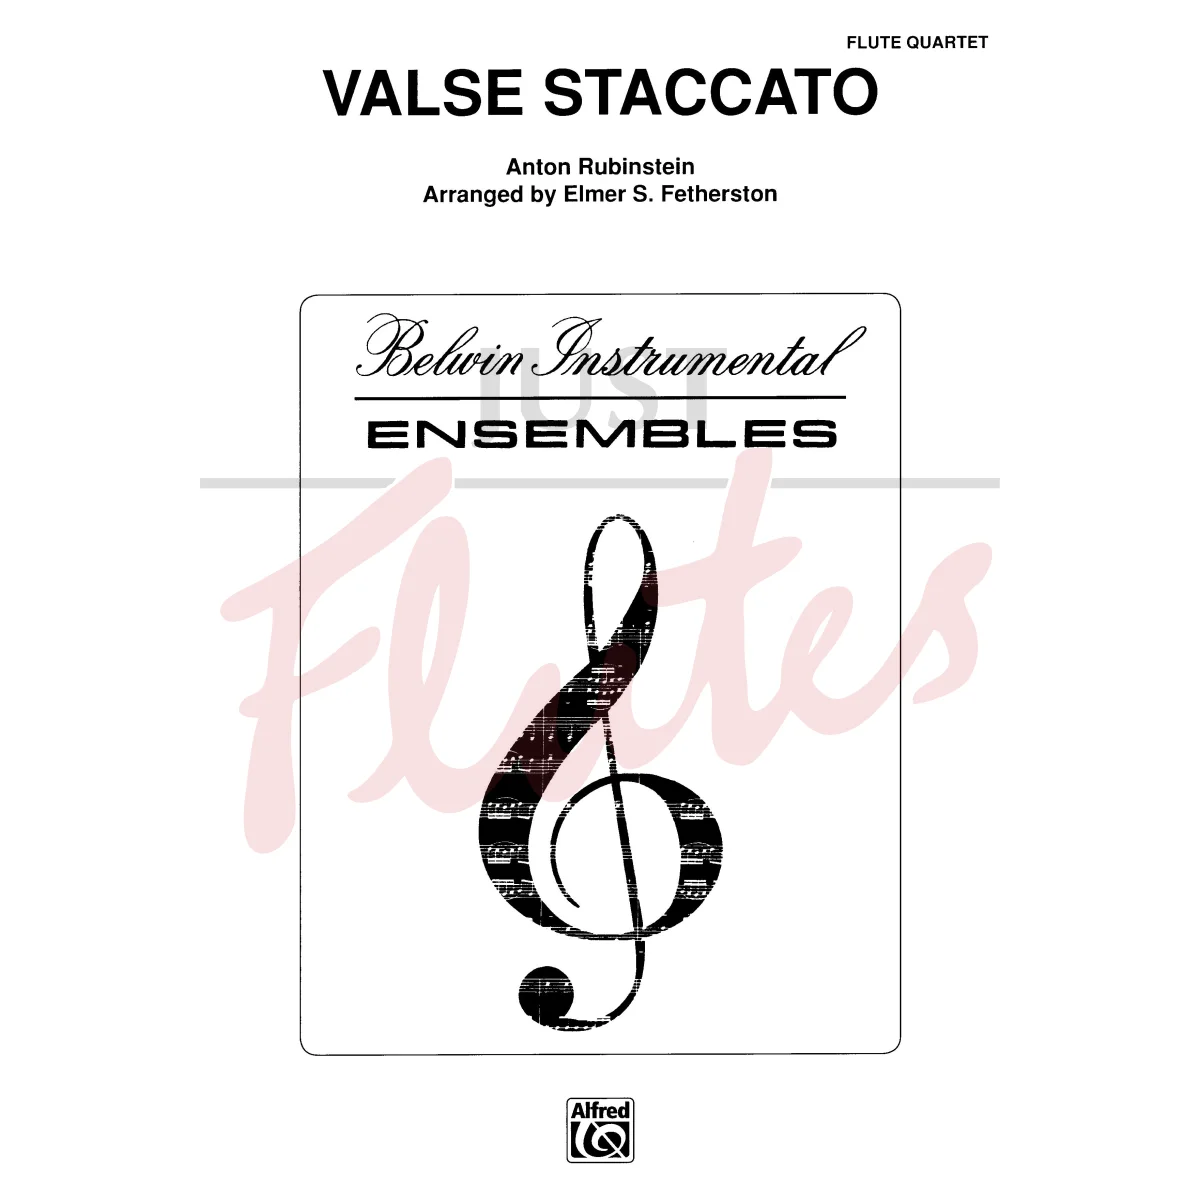 Valse Staccato for Flute Quartet